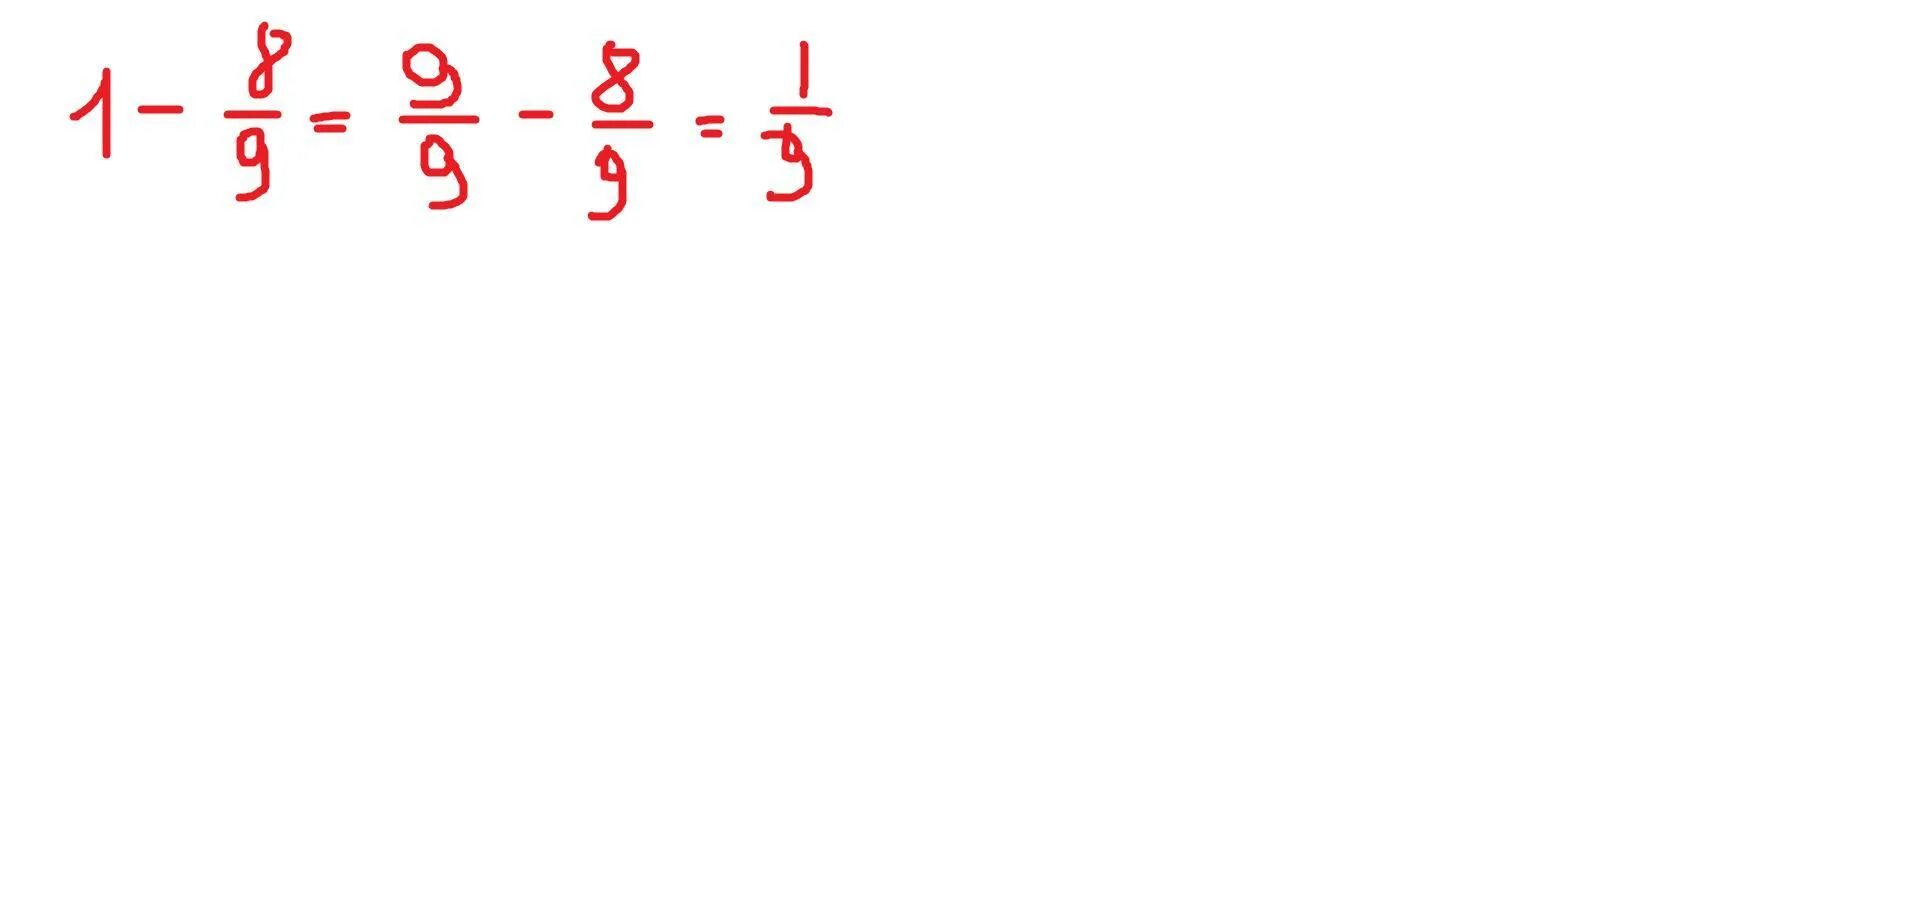 1 18 27 решение. Как решить пример 11 - 18/27. Пример 11 и по 18. Как решить пример 5/9-7/18 как решать. Как решить пример 11/18+13/27.